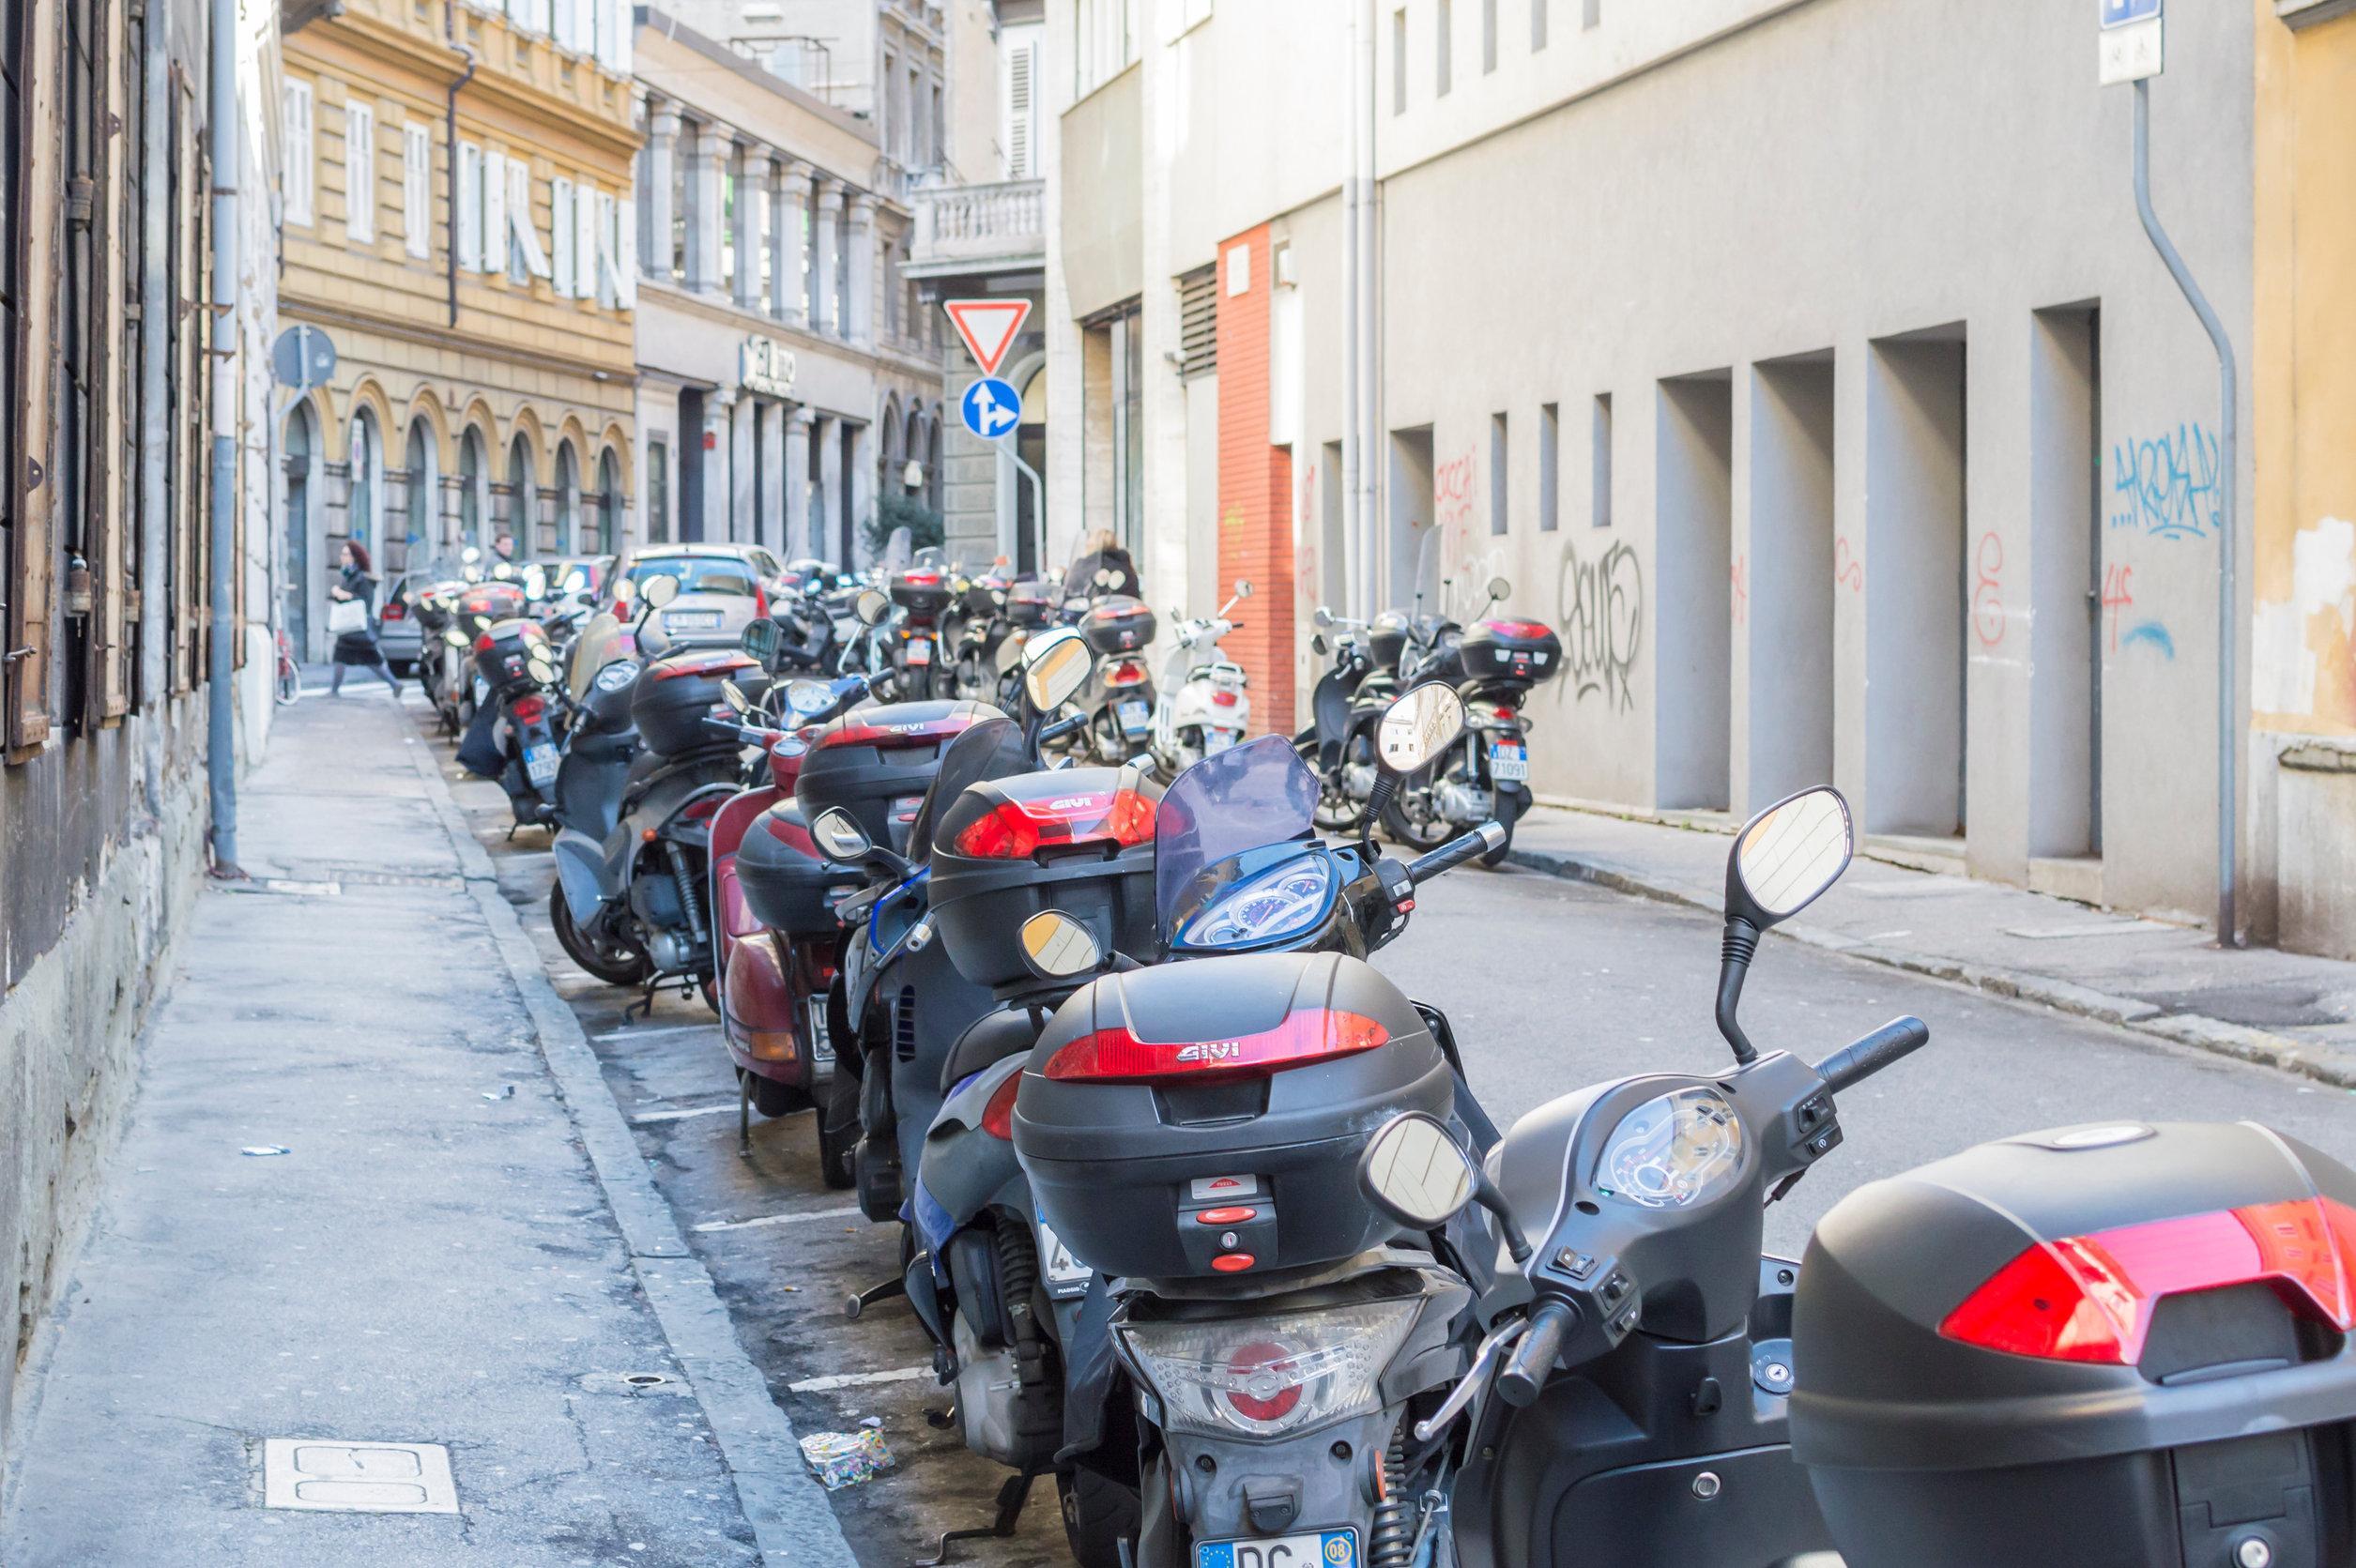 Strisce blu: le moto possono parcheggiare?